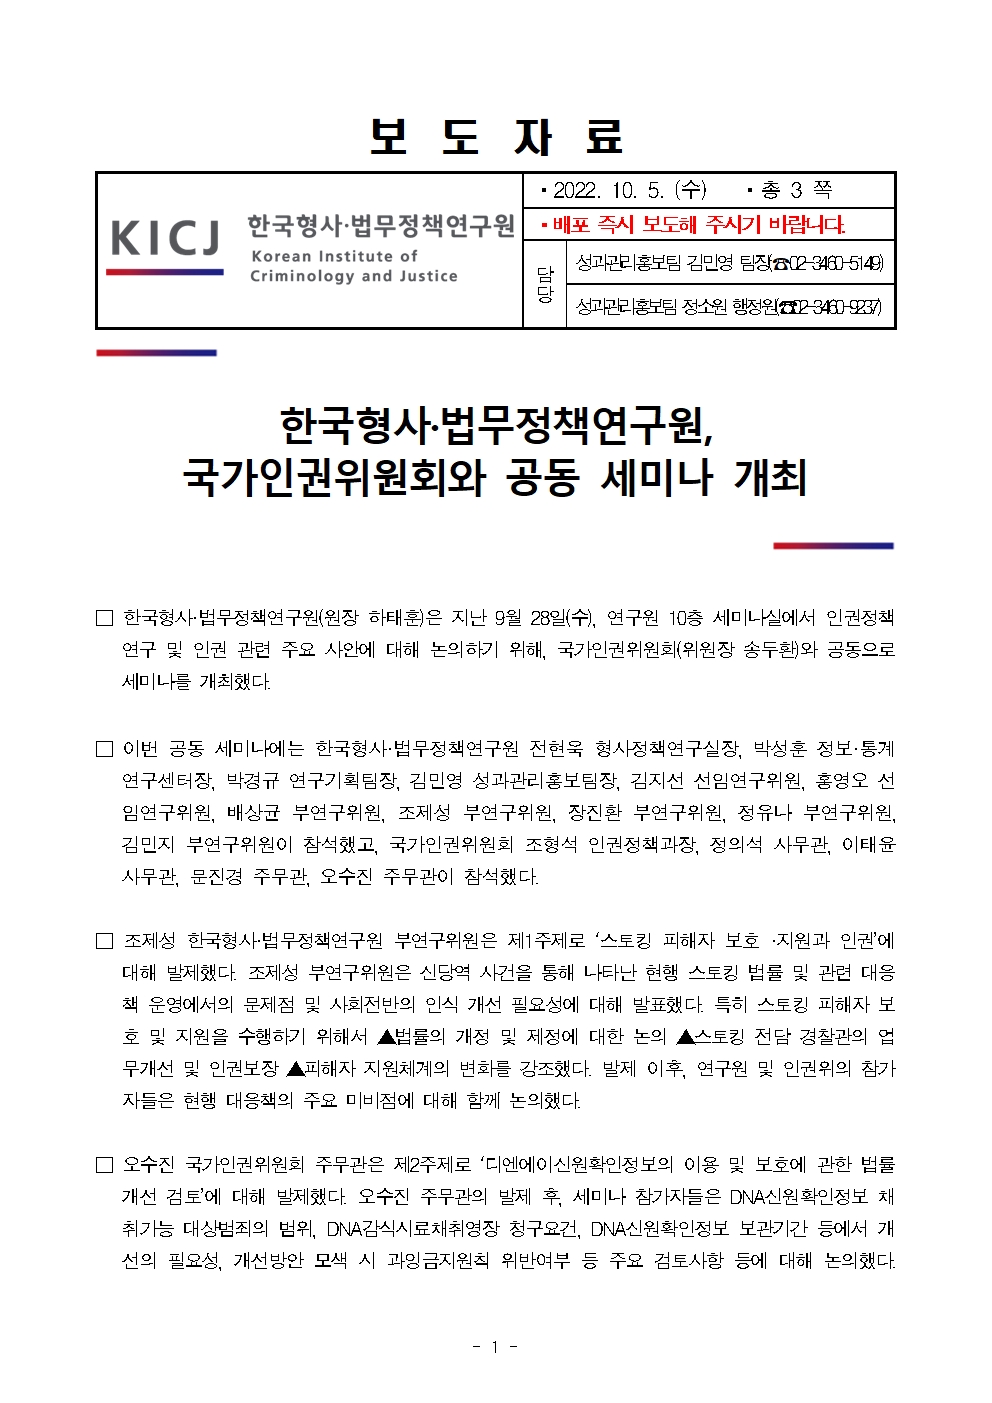 한국형사·법무정책연구원, 국가인권위원회와 공동세미나 개최 자세한 내용은 하단 pdf파일 참조